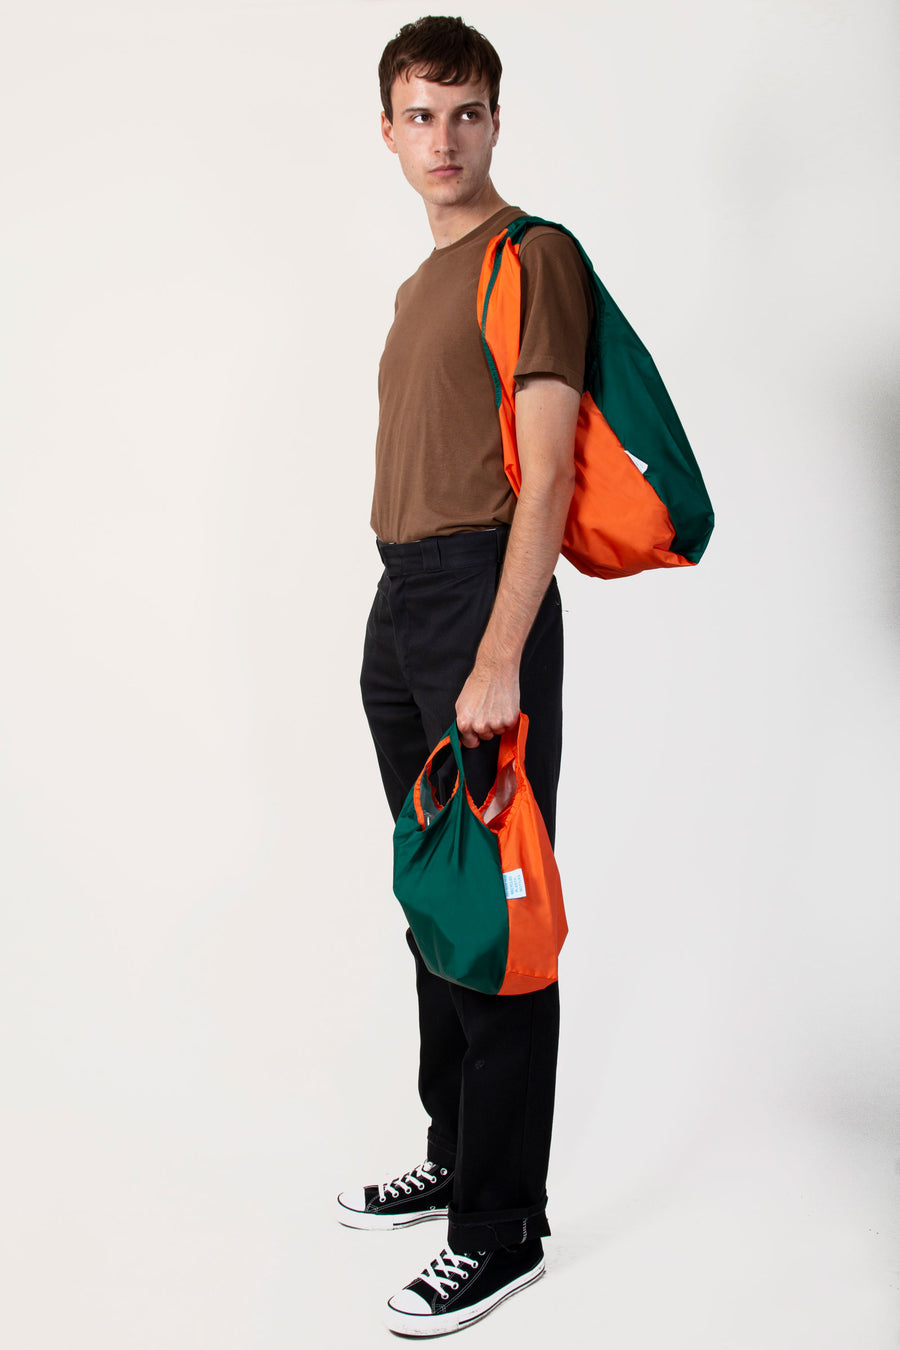 Kind Bag Bi-Colour Orange and Green Reusable Bag, on shoulder whilst holding mini